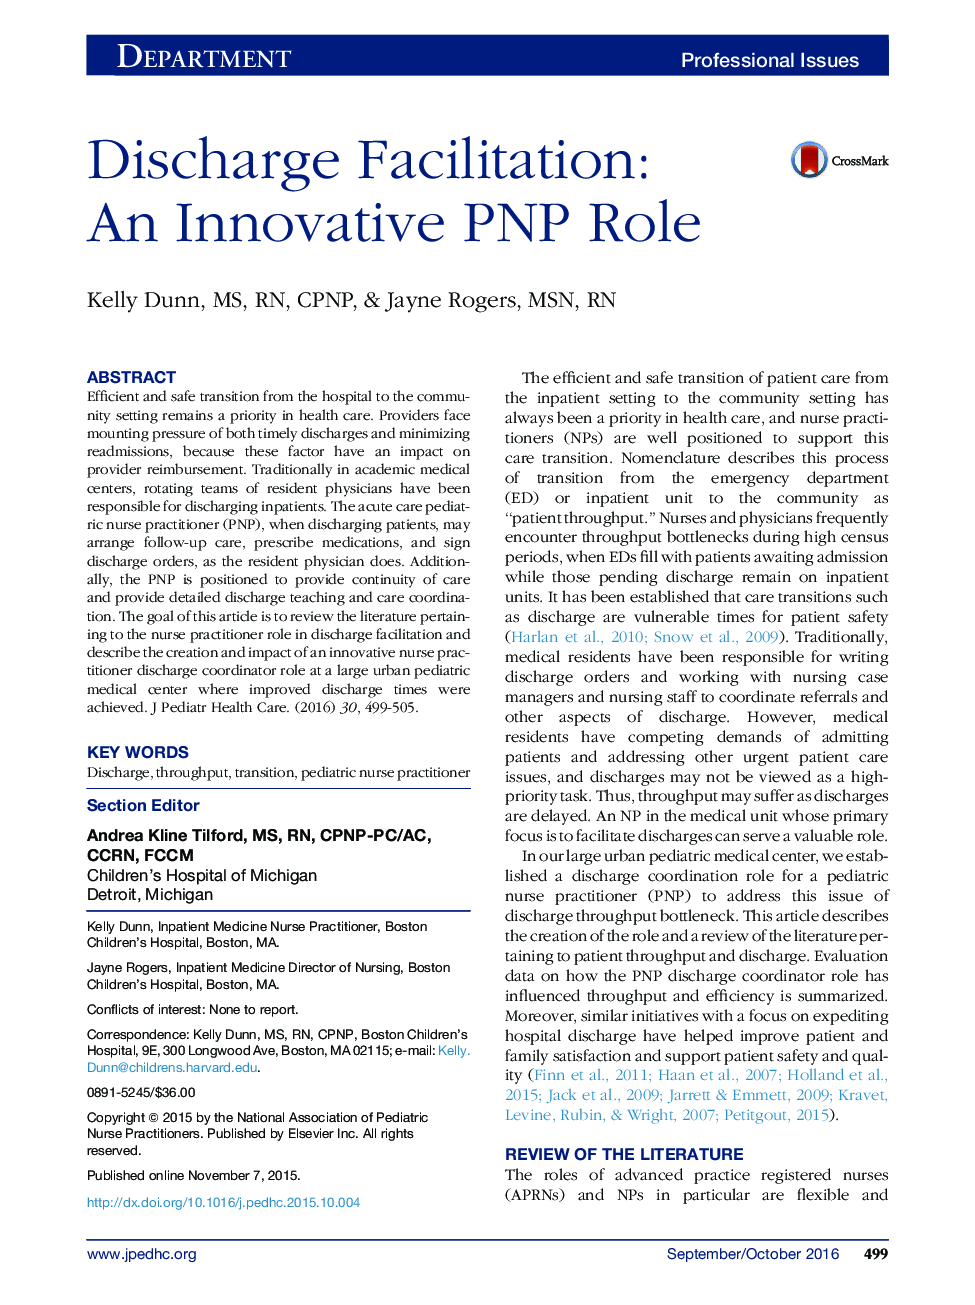 تسهیل ترخیص: یک نقش PNP نوآورانه